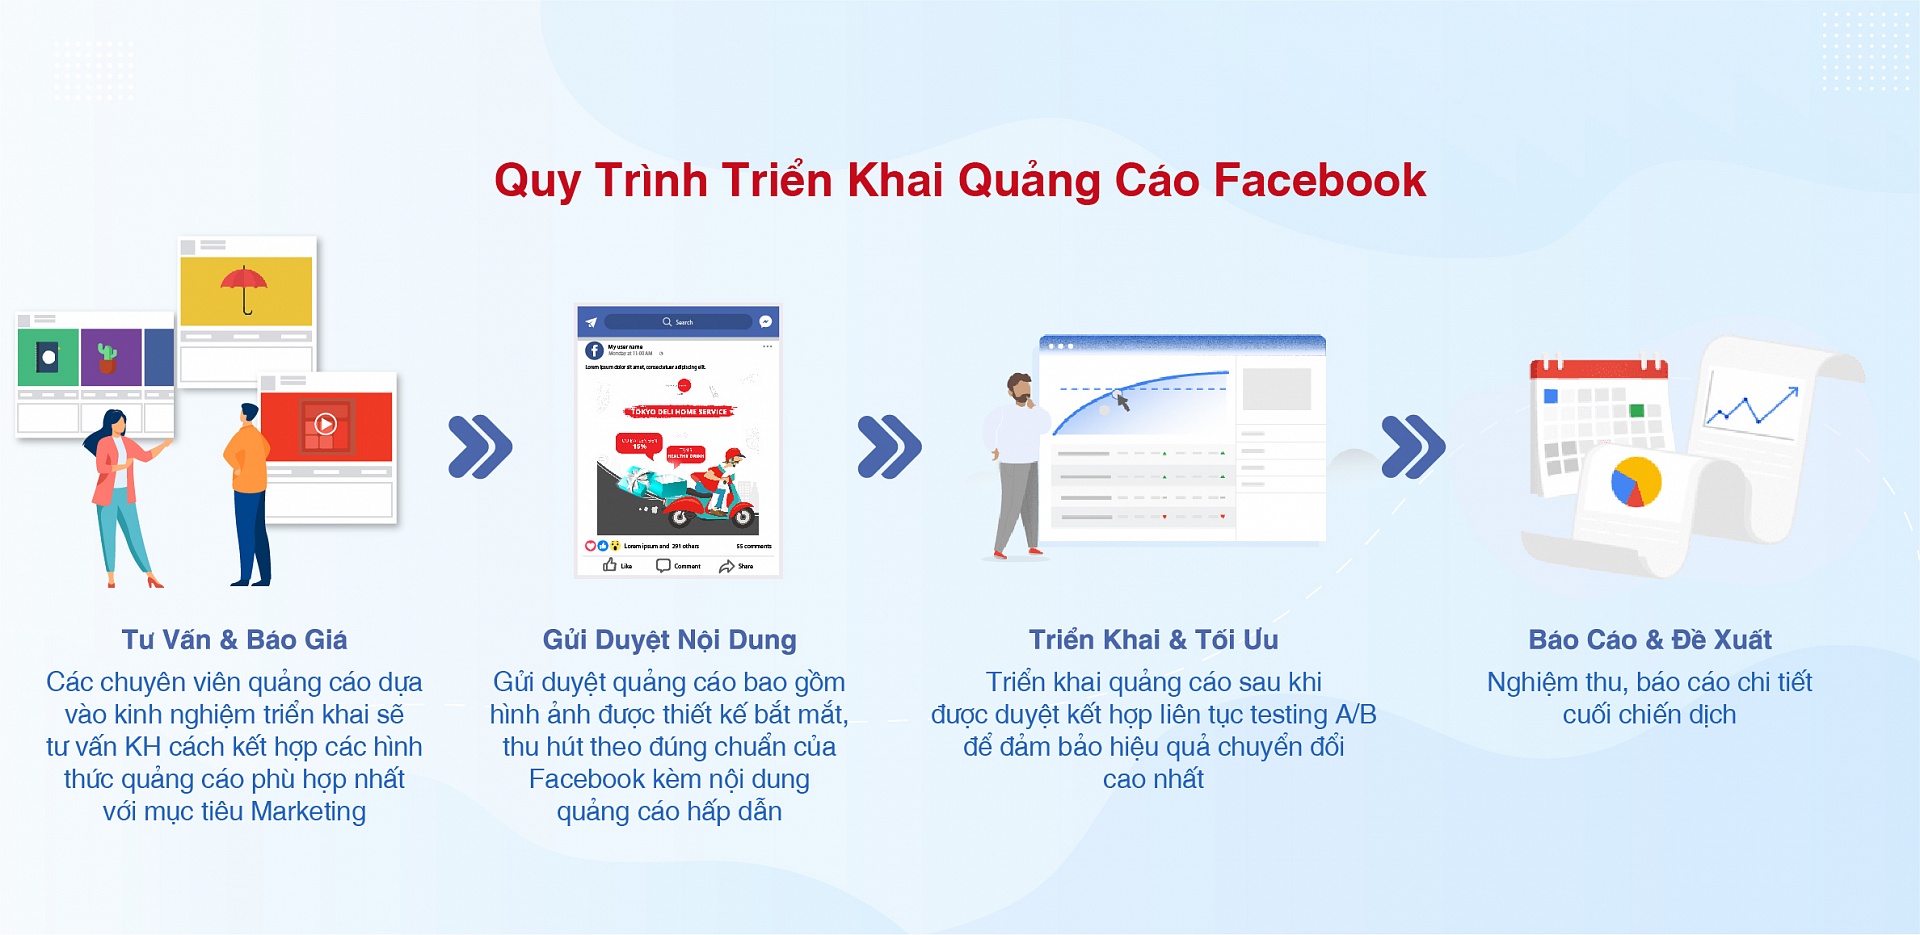 Dich vu Quang cao Facebook